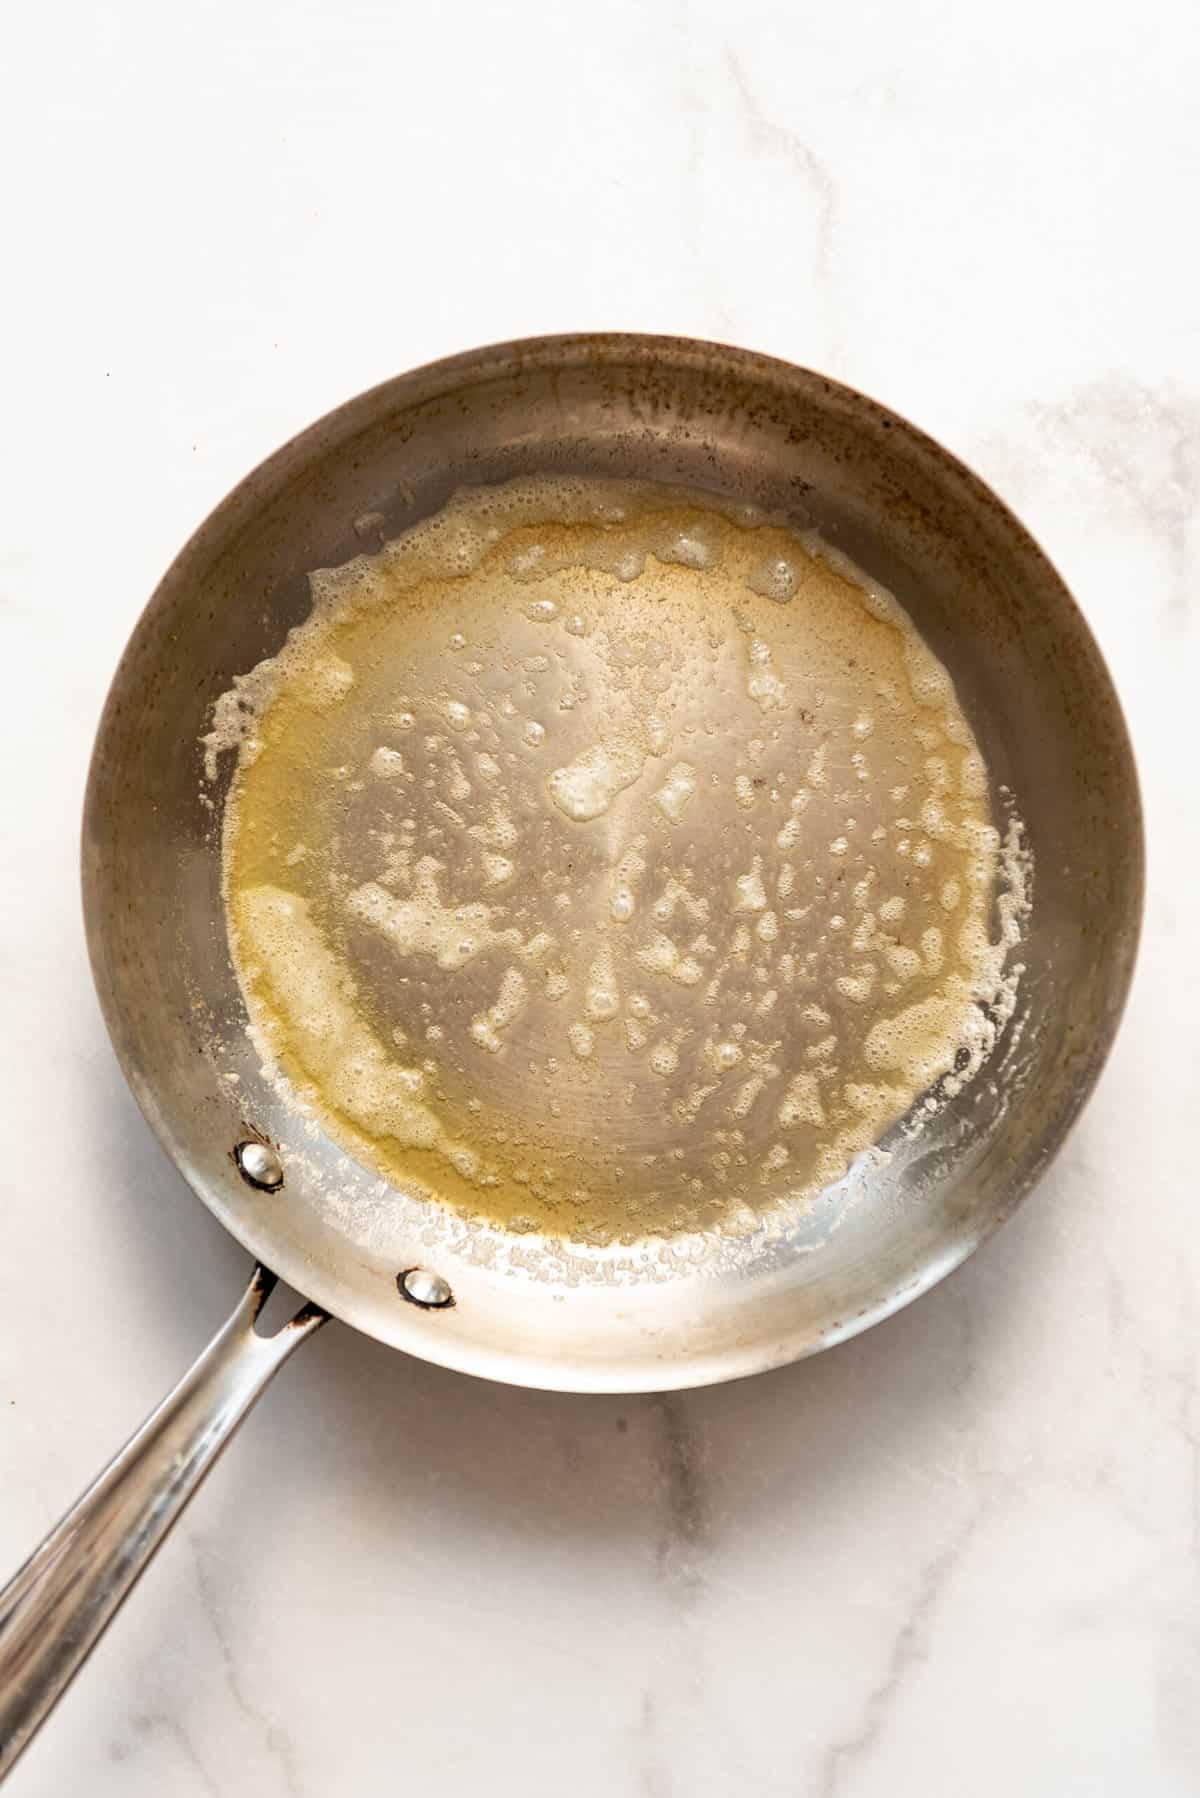 Melting butter in a large skillet.